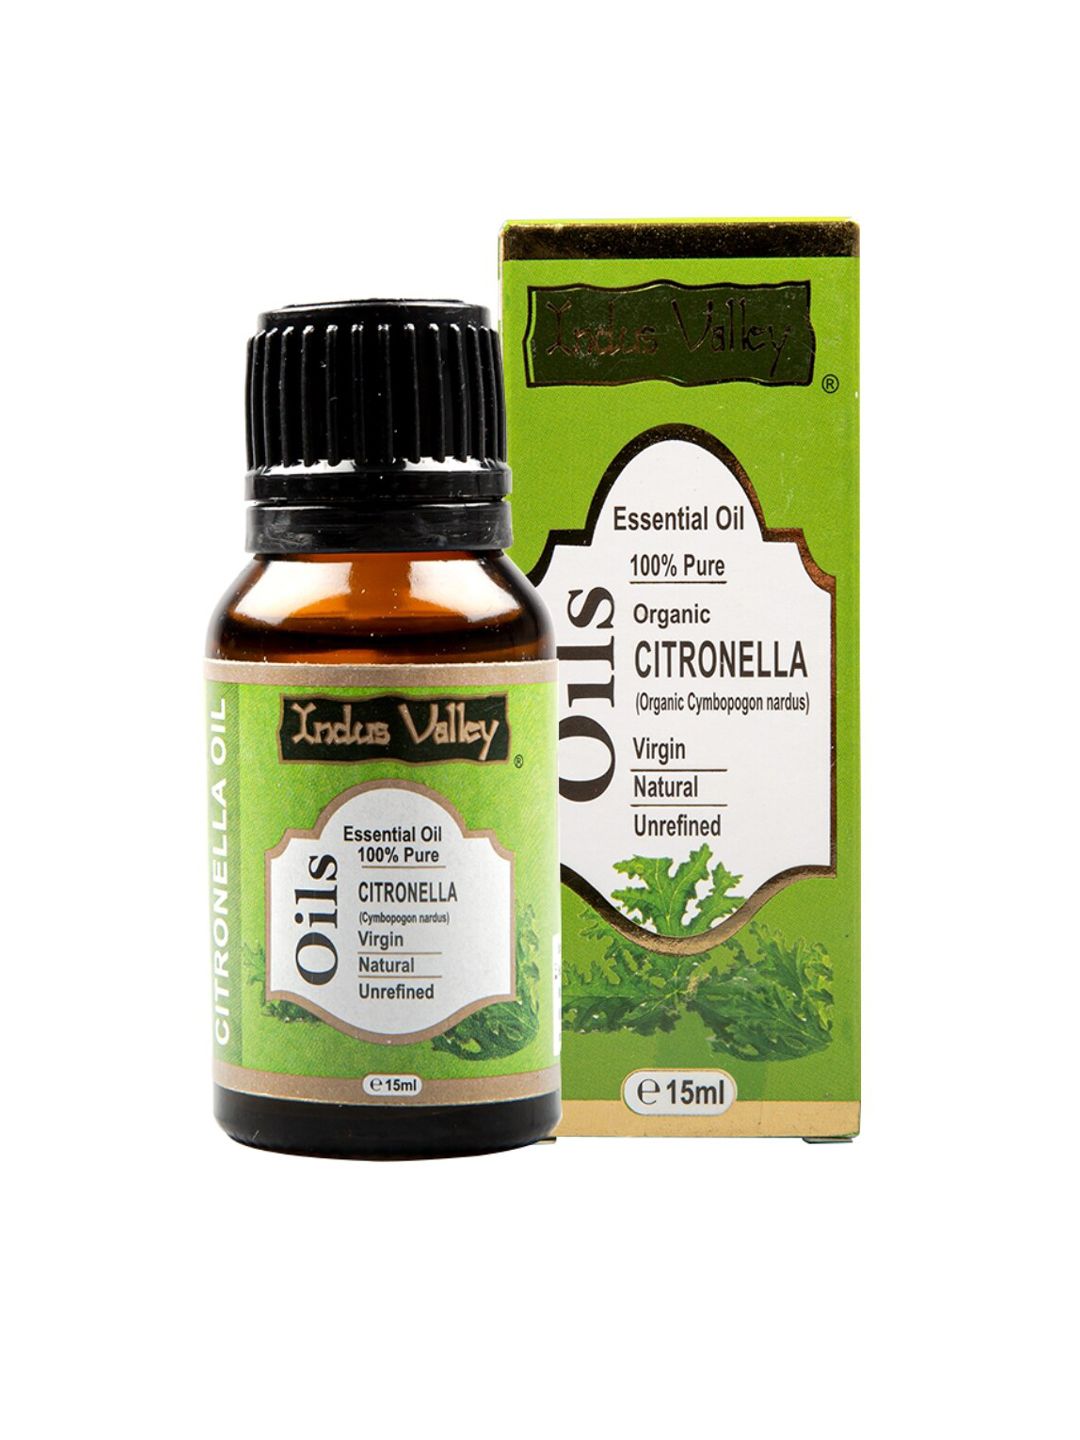 Indus Valley Citronella Essential Oil 15 ml Price in India